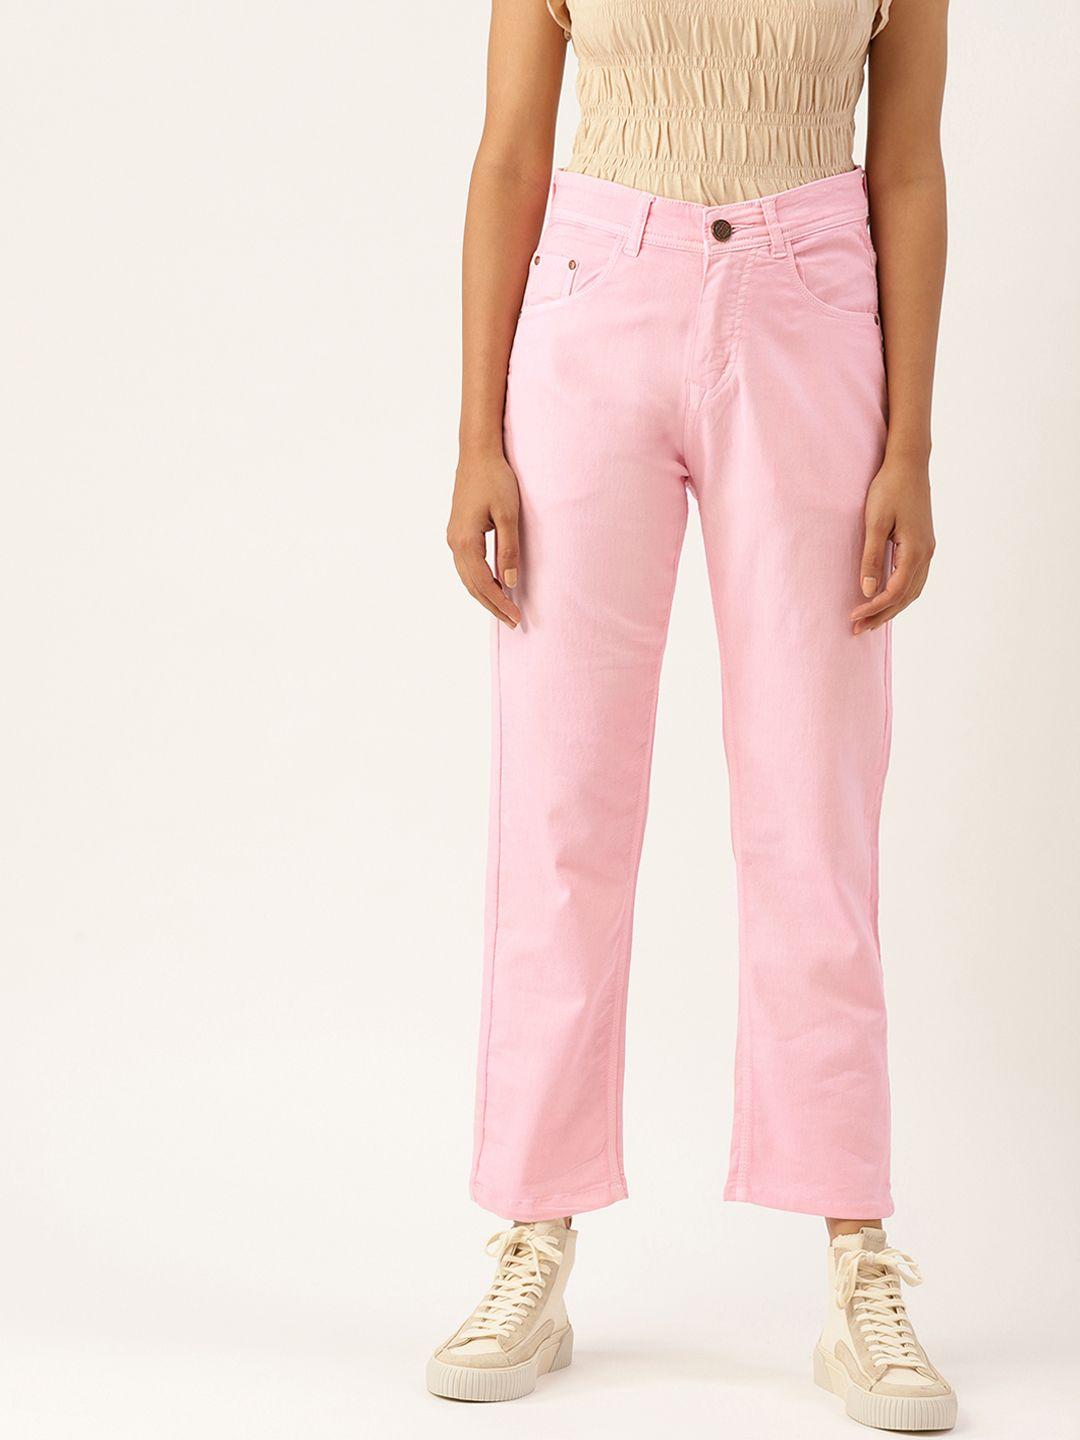 paris-hamilton-women-pink-boyfriend-fit-high-rise-stretchable-jeans